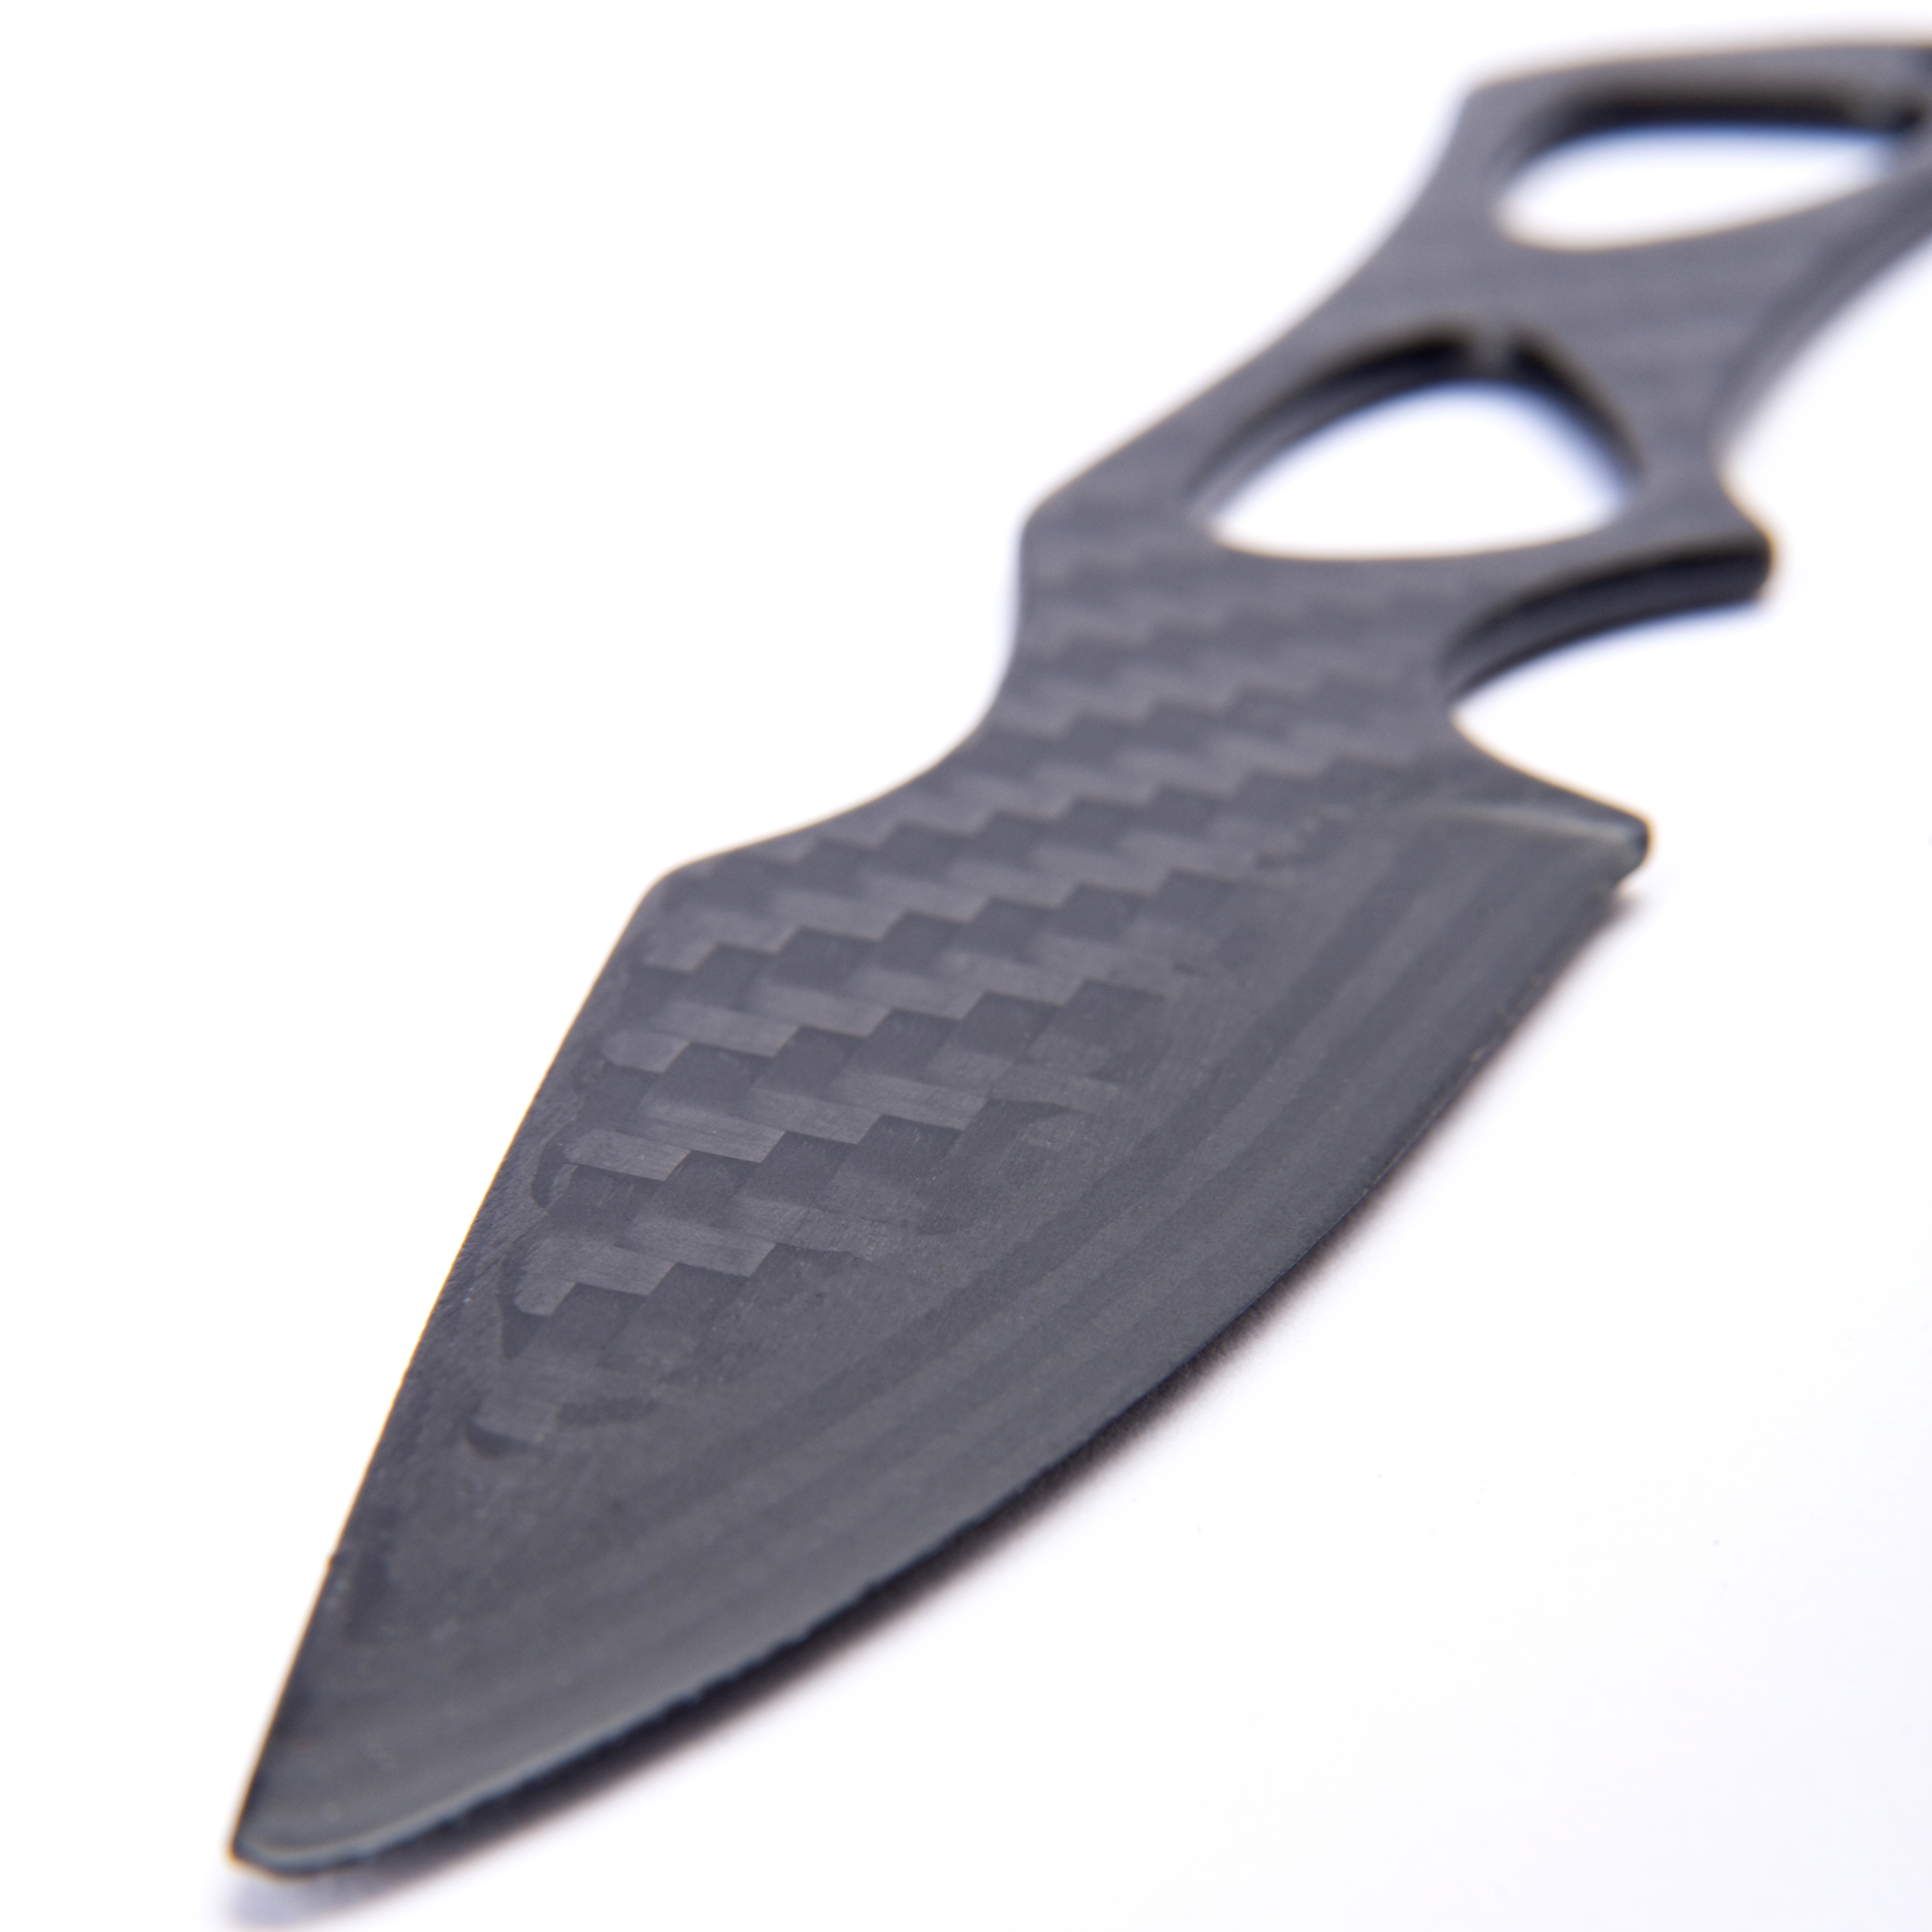 Carbon fiber knife